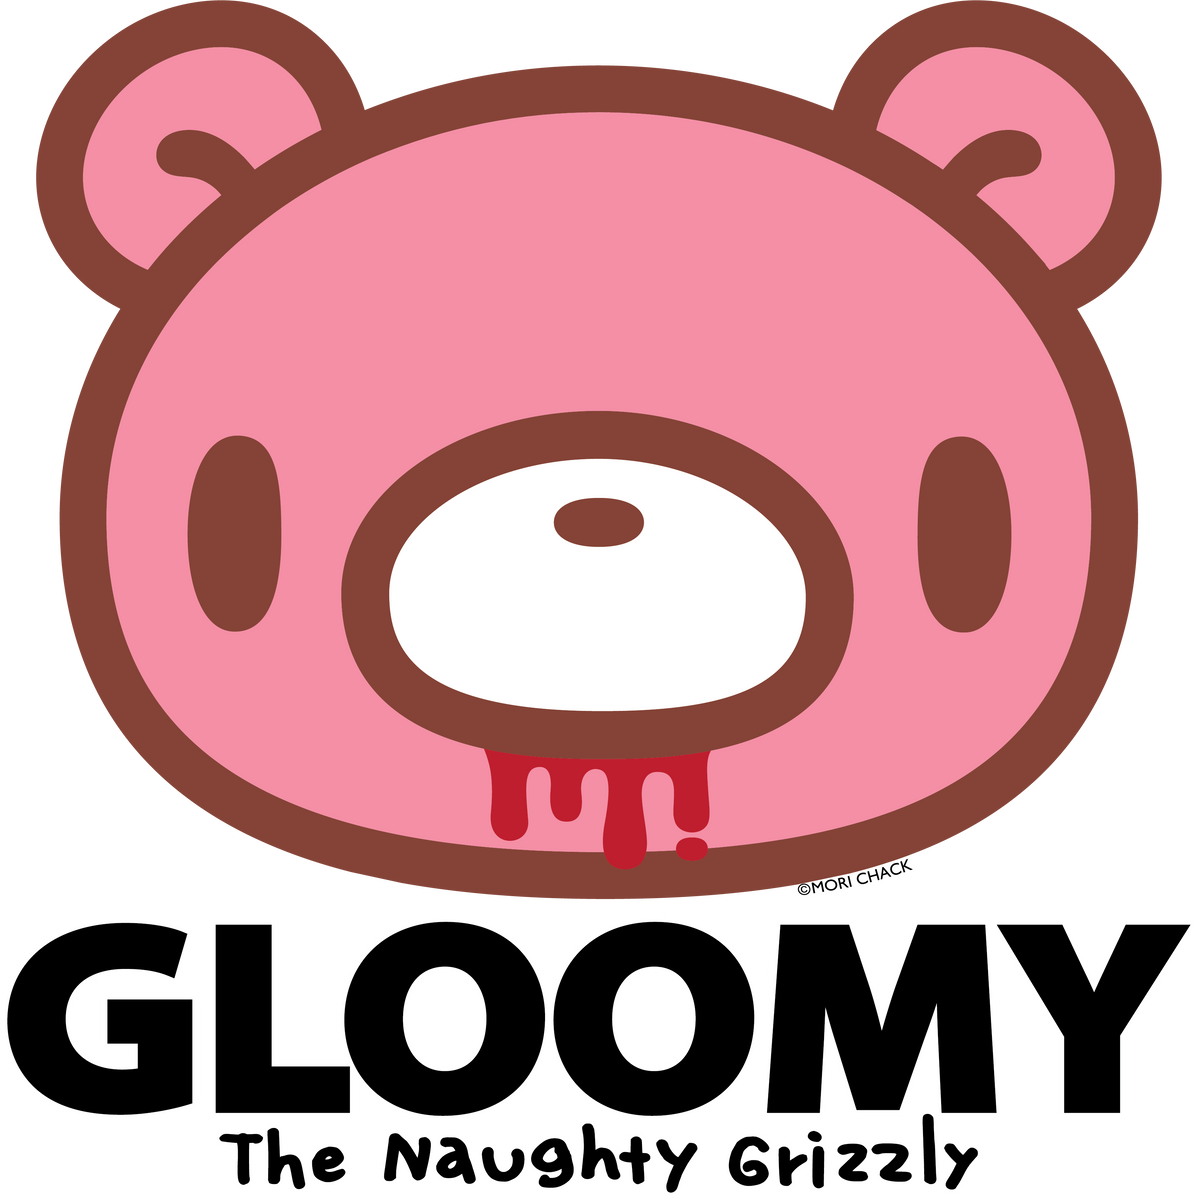 Gloomy Bear Cell phone Grip [BLACK] - Gloomy Bear Official